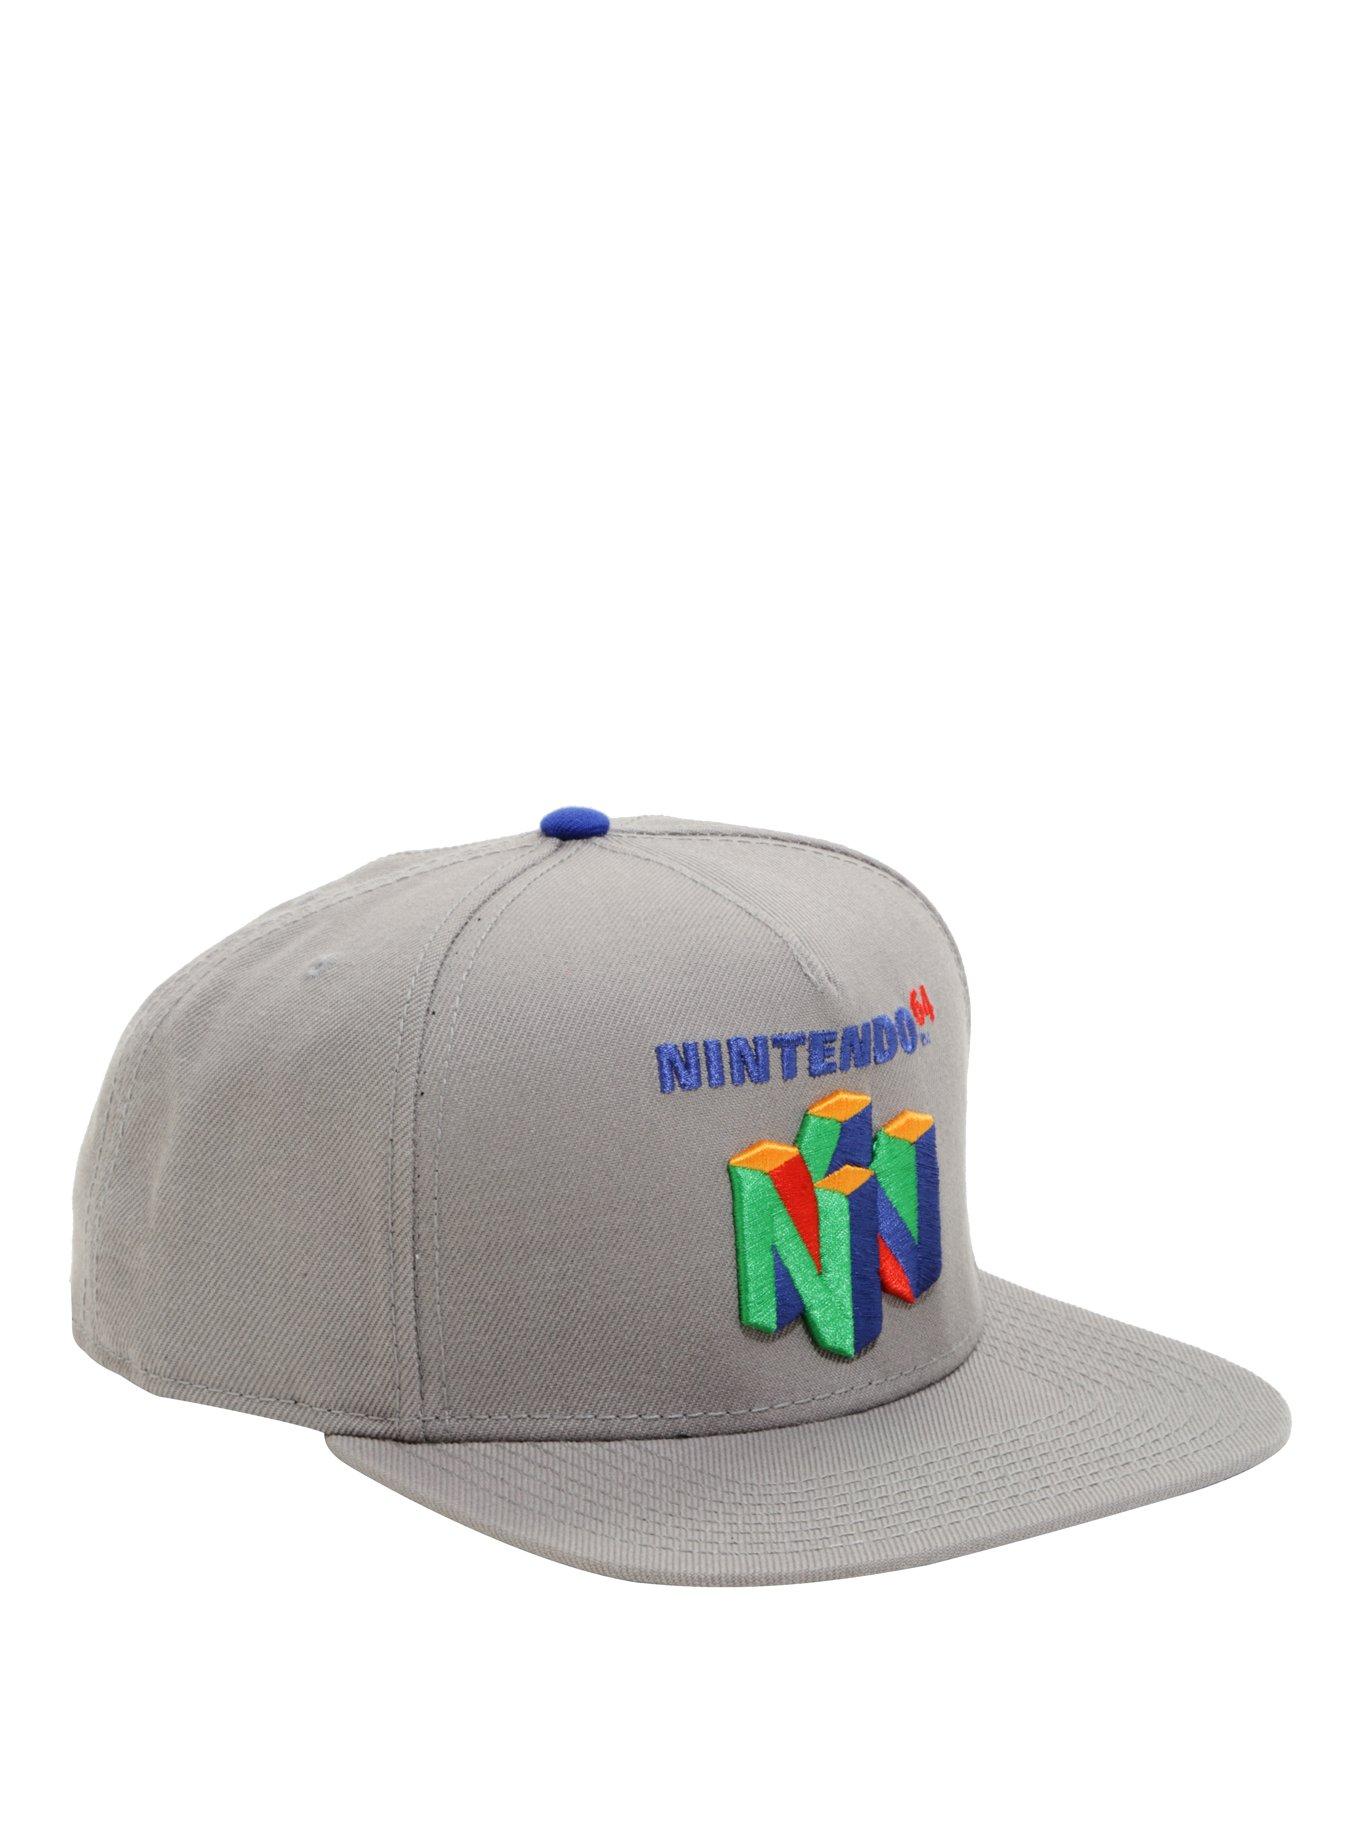 Nintendo 64 Logo Snapback Hat, , hi-res